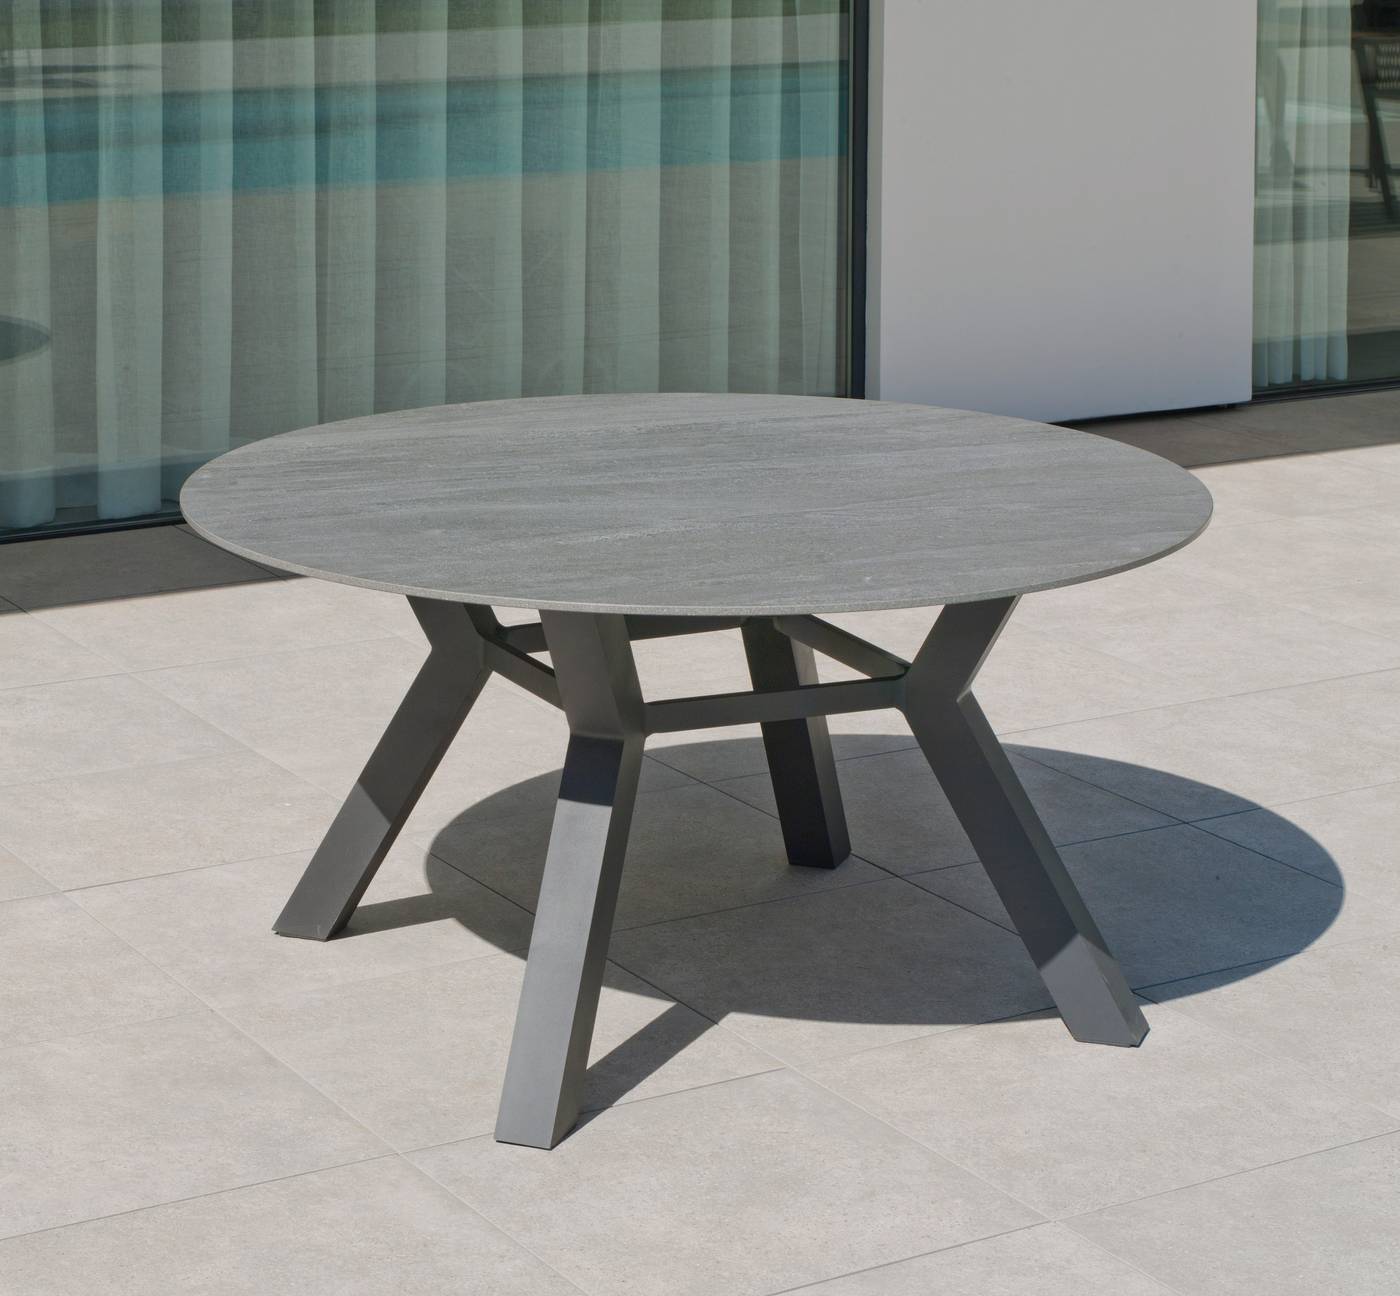 Mesa de aluminio circular de 150 cm, con tablero de piedra sinterizada de alta calidad. Disponible en varios colores.